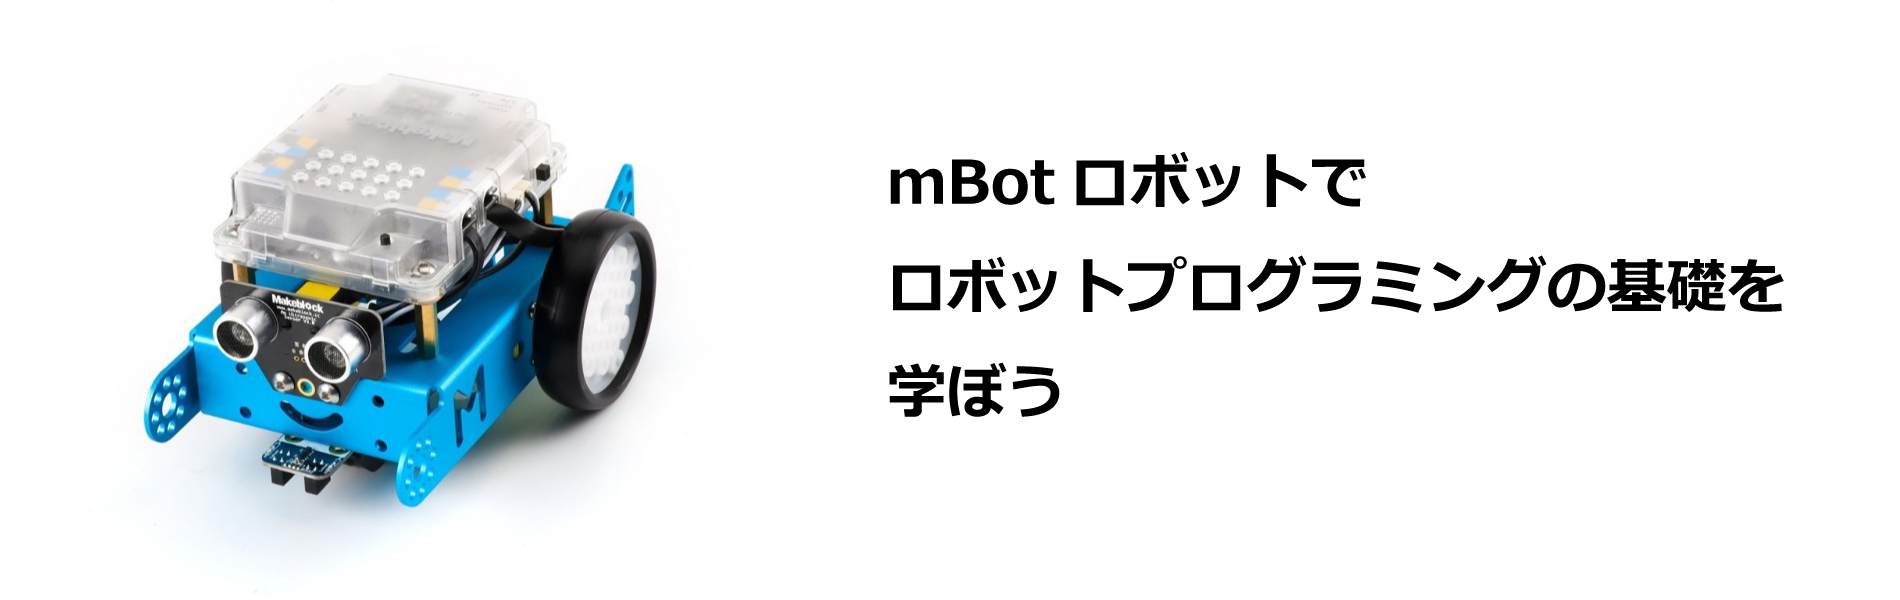 mbotロボット講座の写真